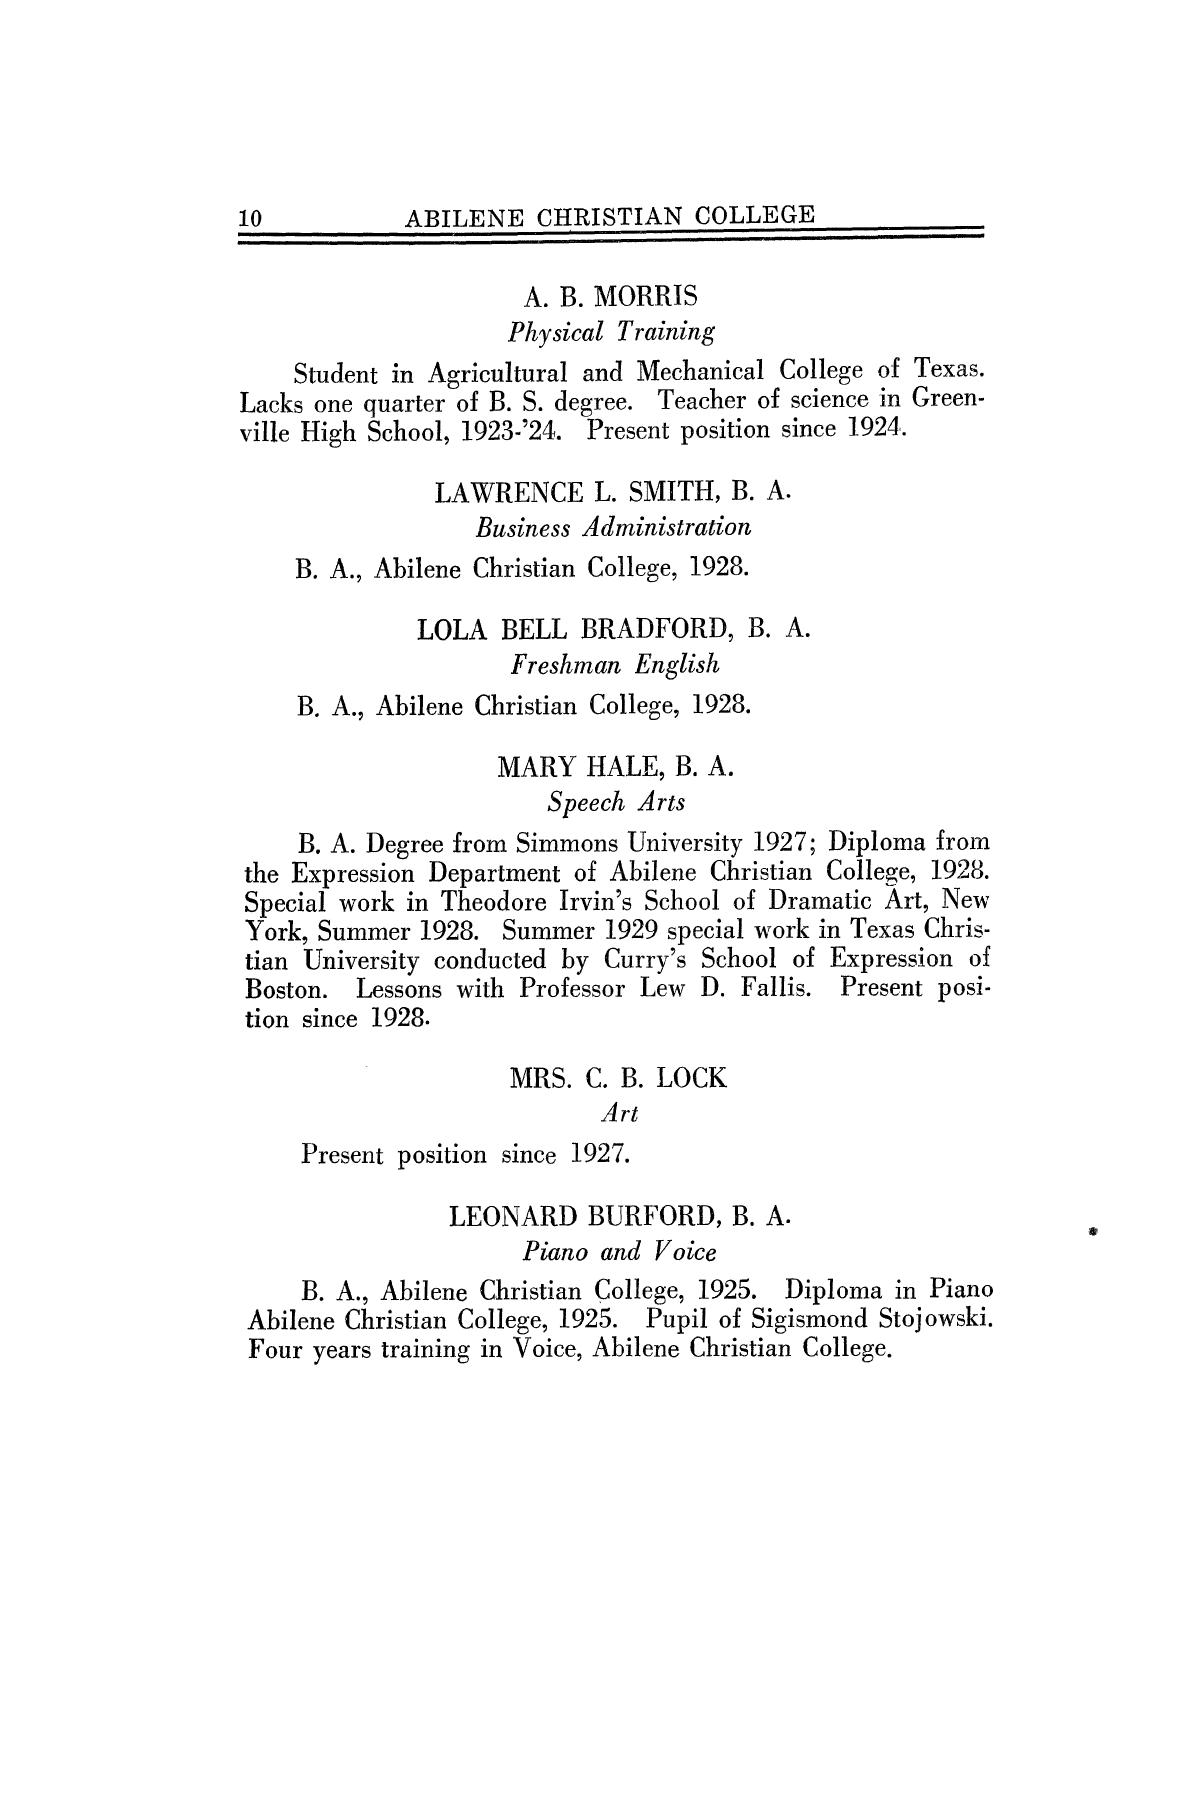 Catalog of Abilene Christian College, 1930
                                                
                                                    10
                                                